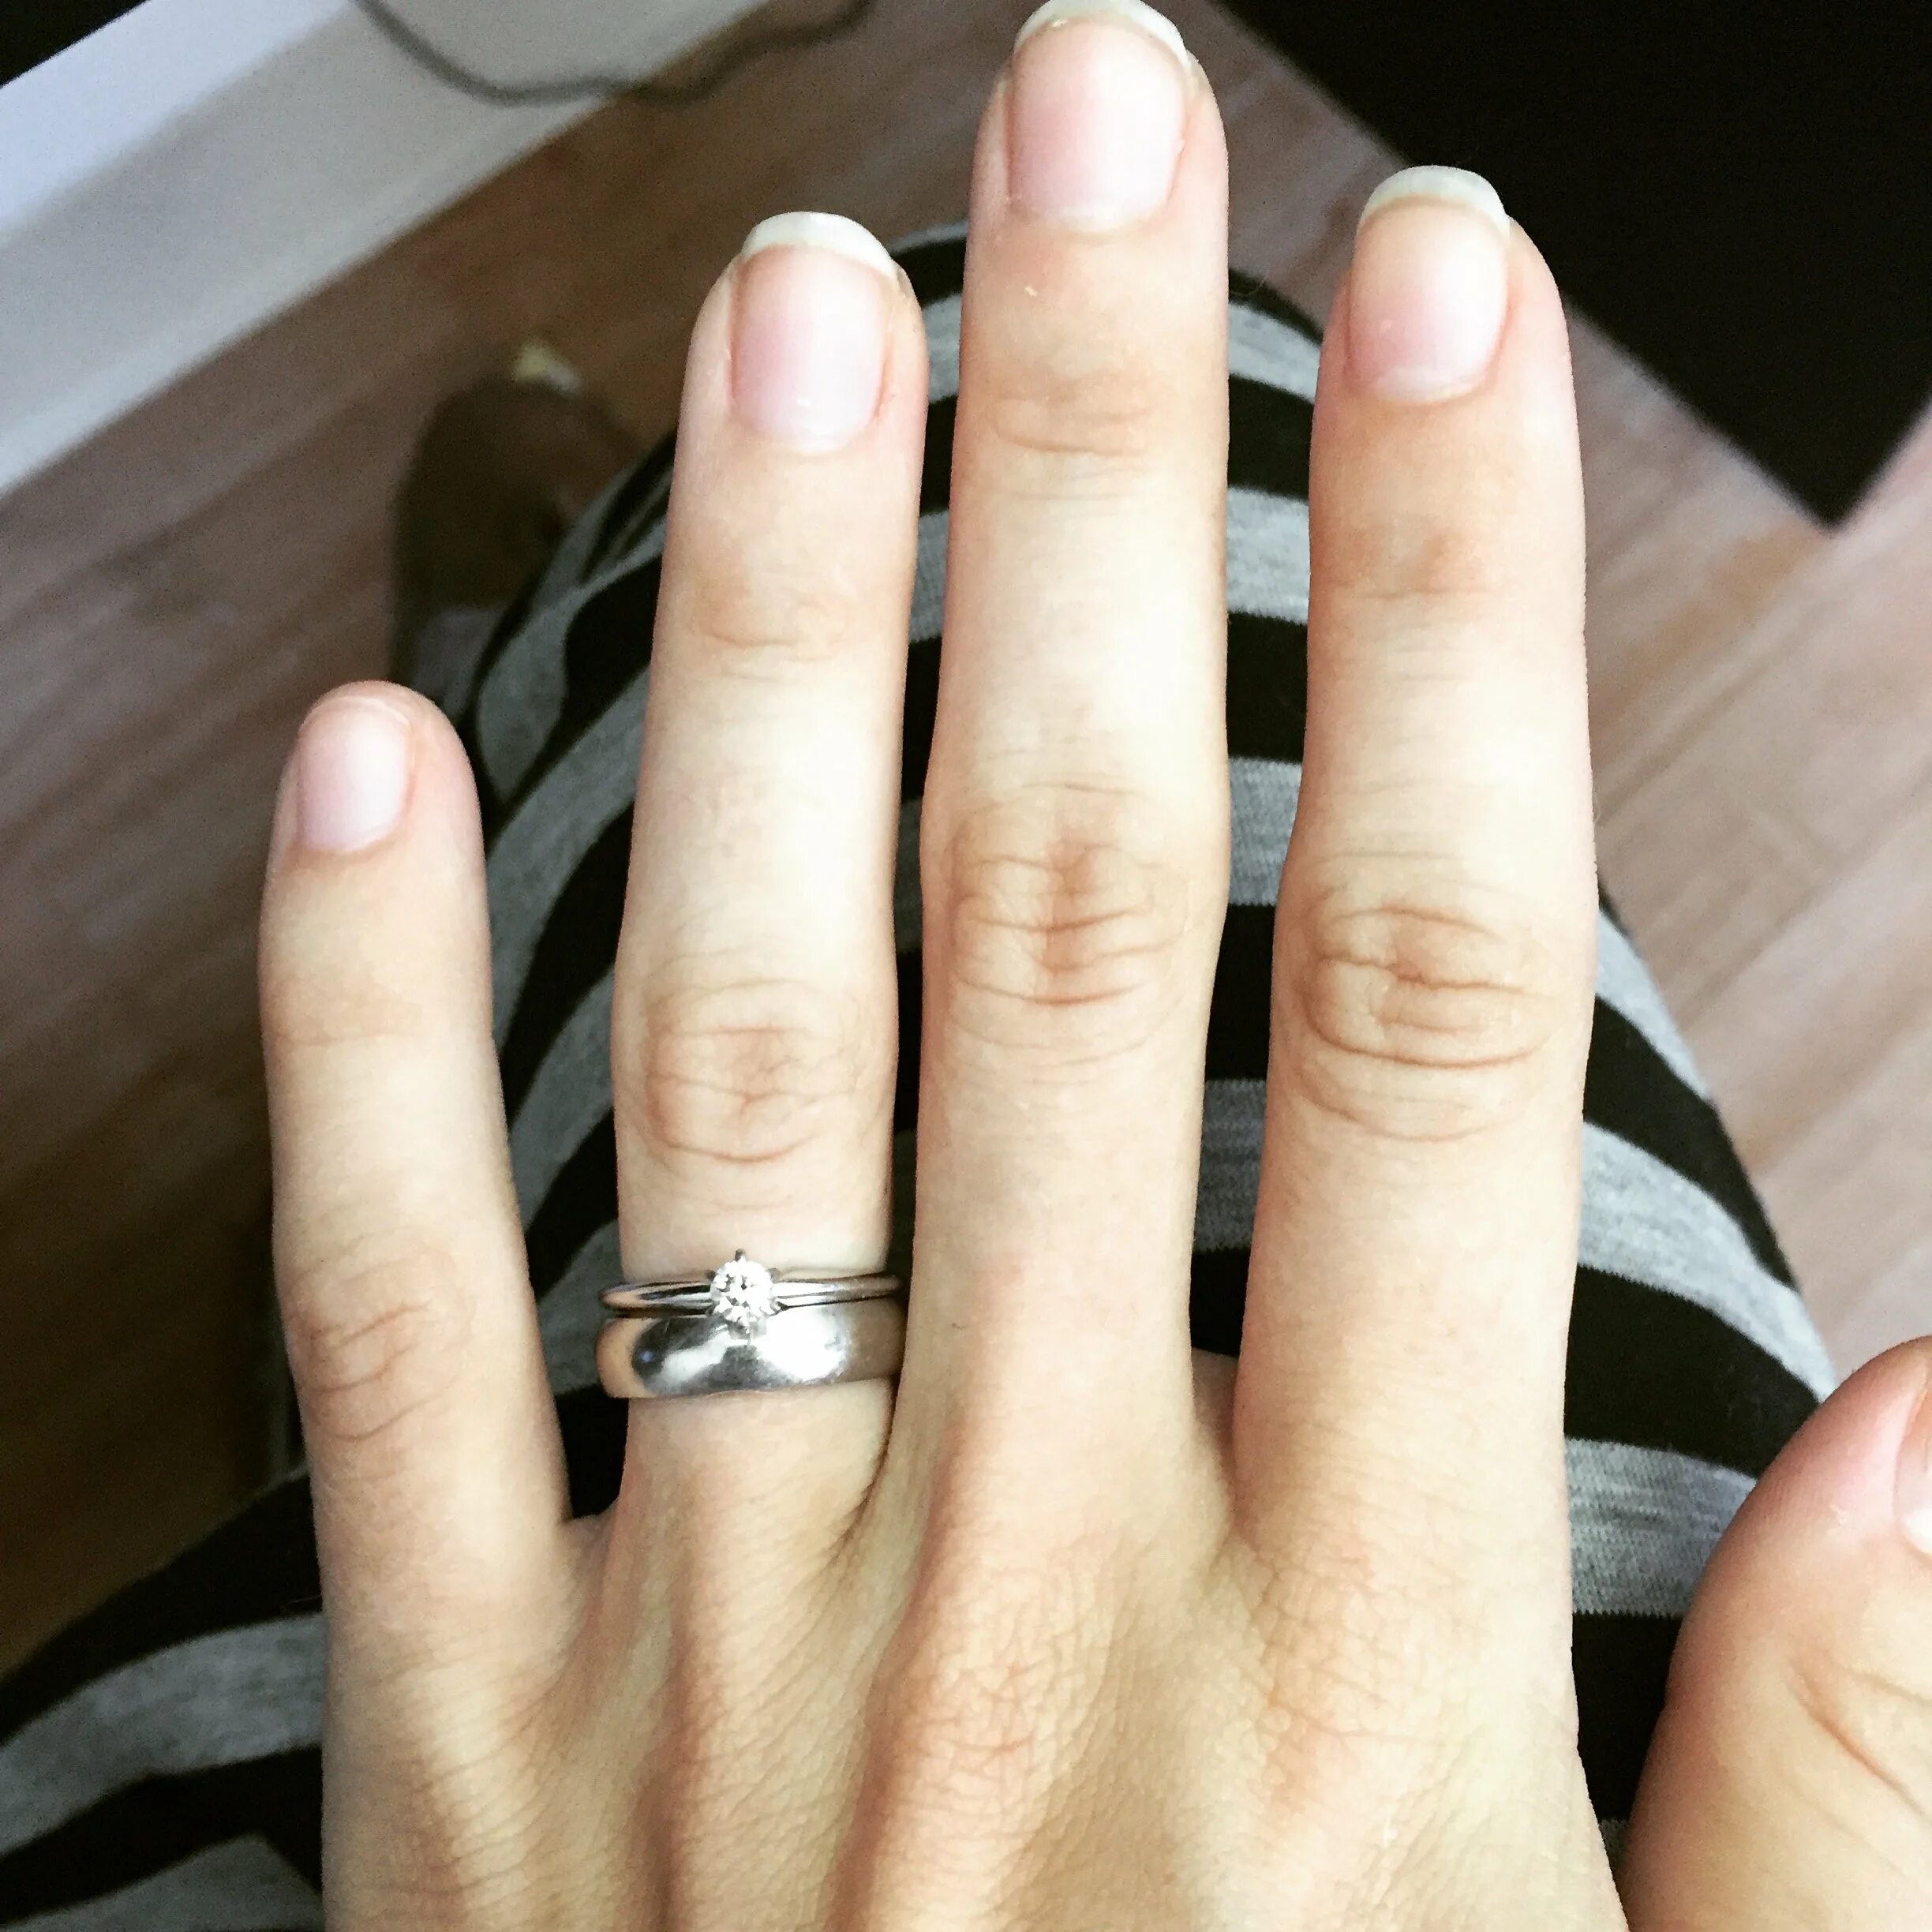 Тонкое обручальное кольцо на пальце. Плоские обручальные кольца на руке. Современные обручальные кольца на руке.